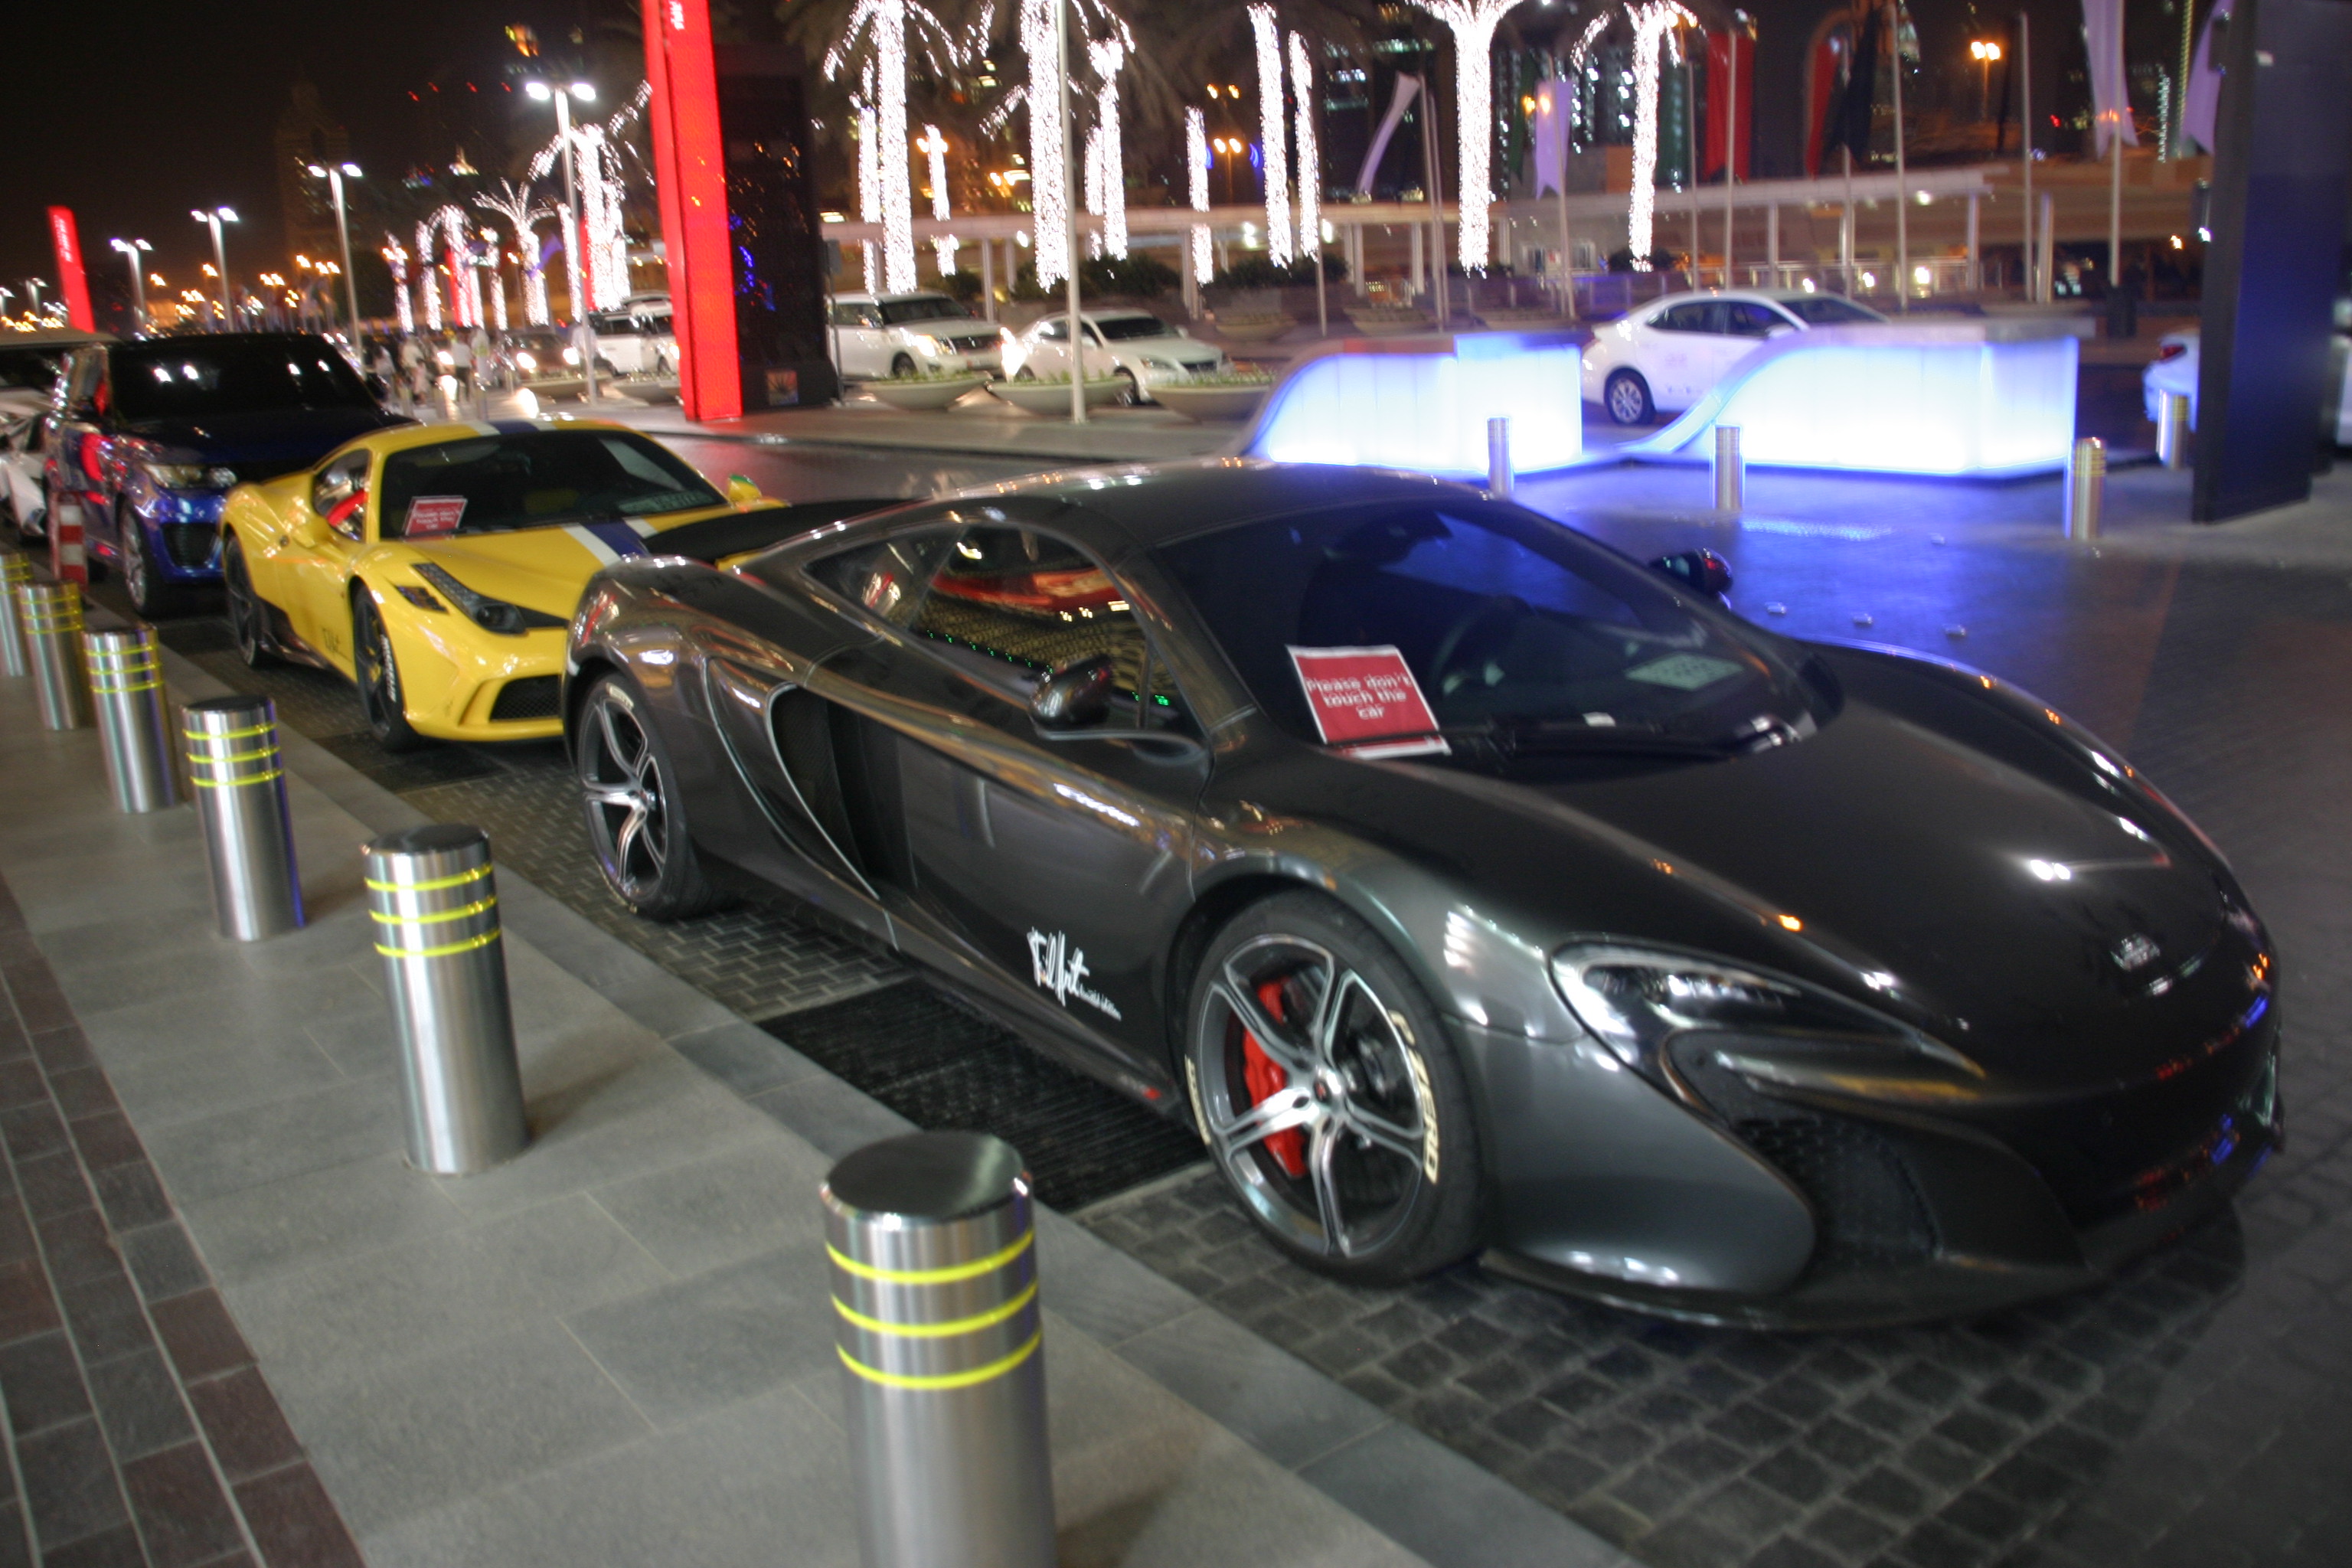 Luxus autók a Dubai Mall főbejárata előtt - a közbiztonságról sokat elmond, hogy a kocsikat nem zárják, hanem nyitva hagyják és sokszor az ablakba csak egy kis táblát tesznek ki, hogy ne tapogassák össze az idegenek a tisztára mosott autókat a kezeikkel